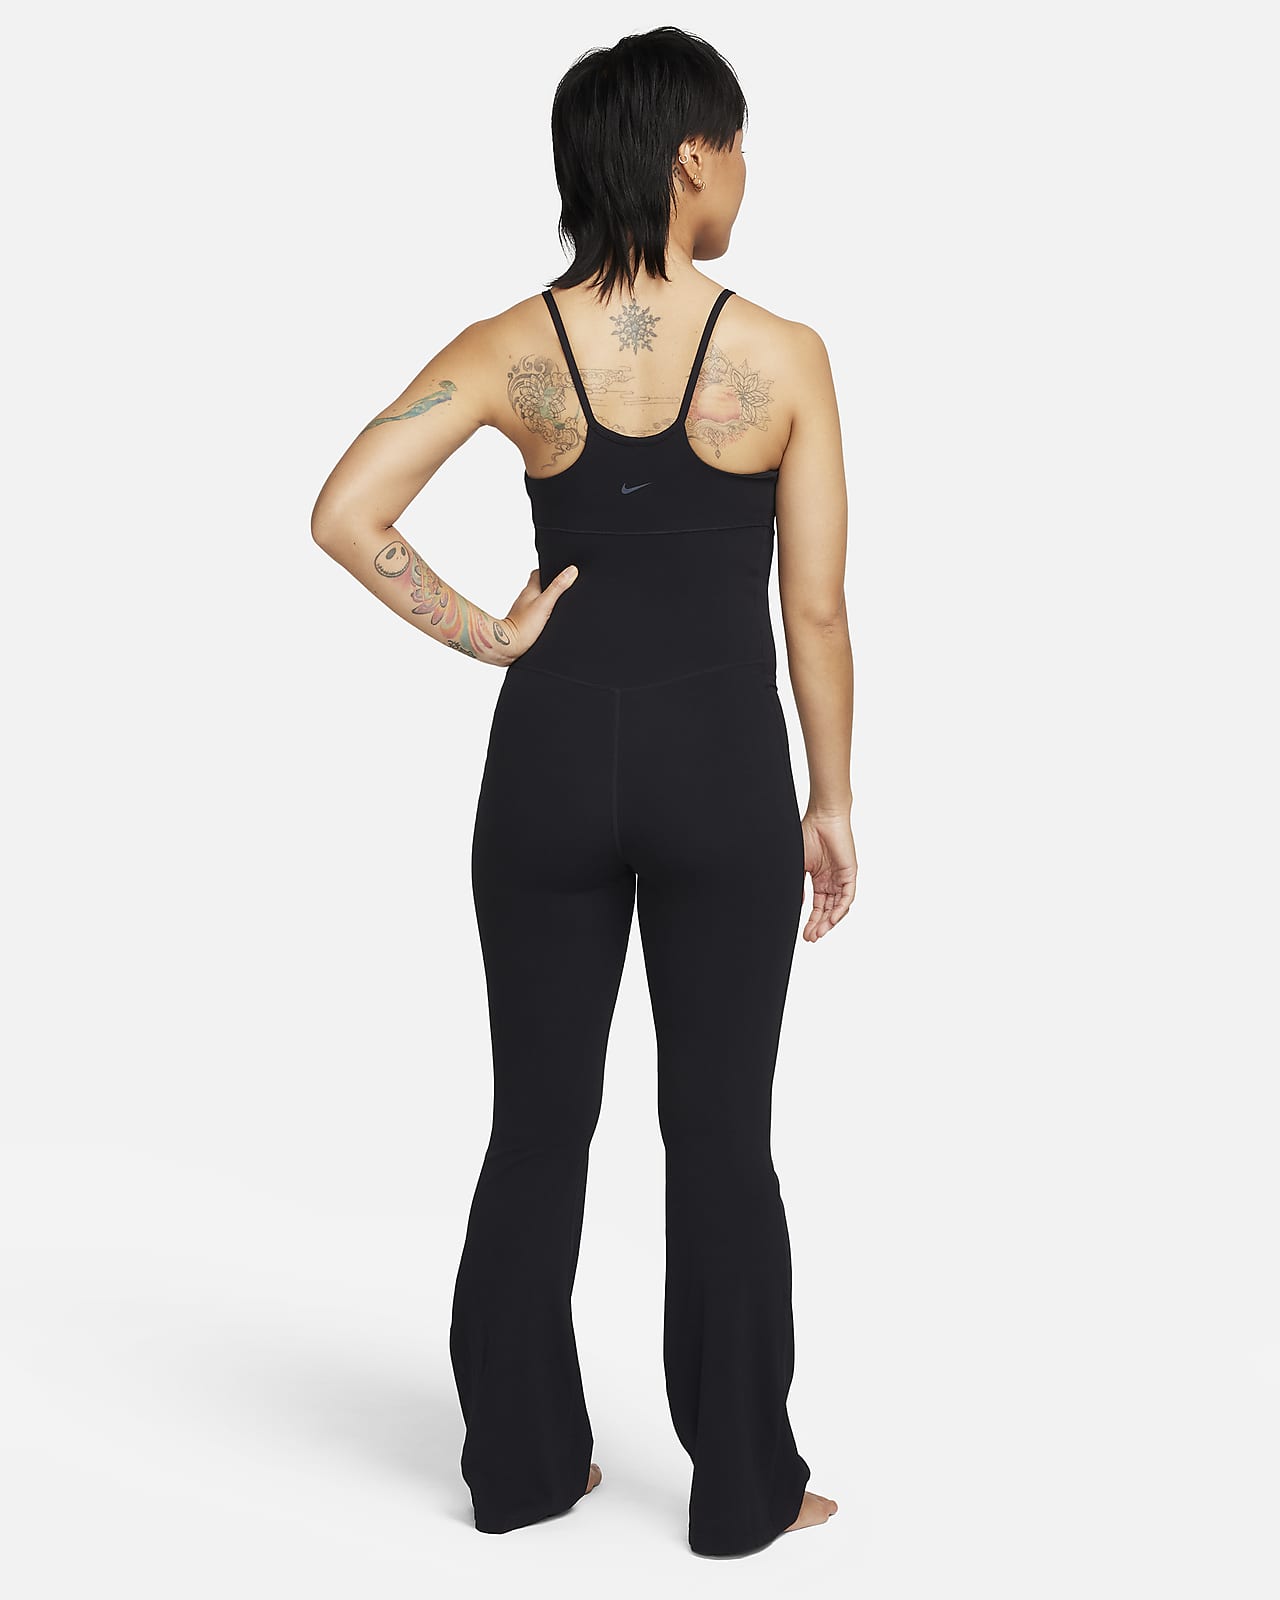 Nylon Regular Size Bodysuits for Women for sale